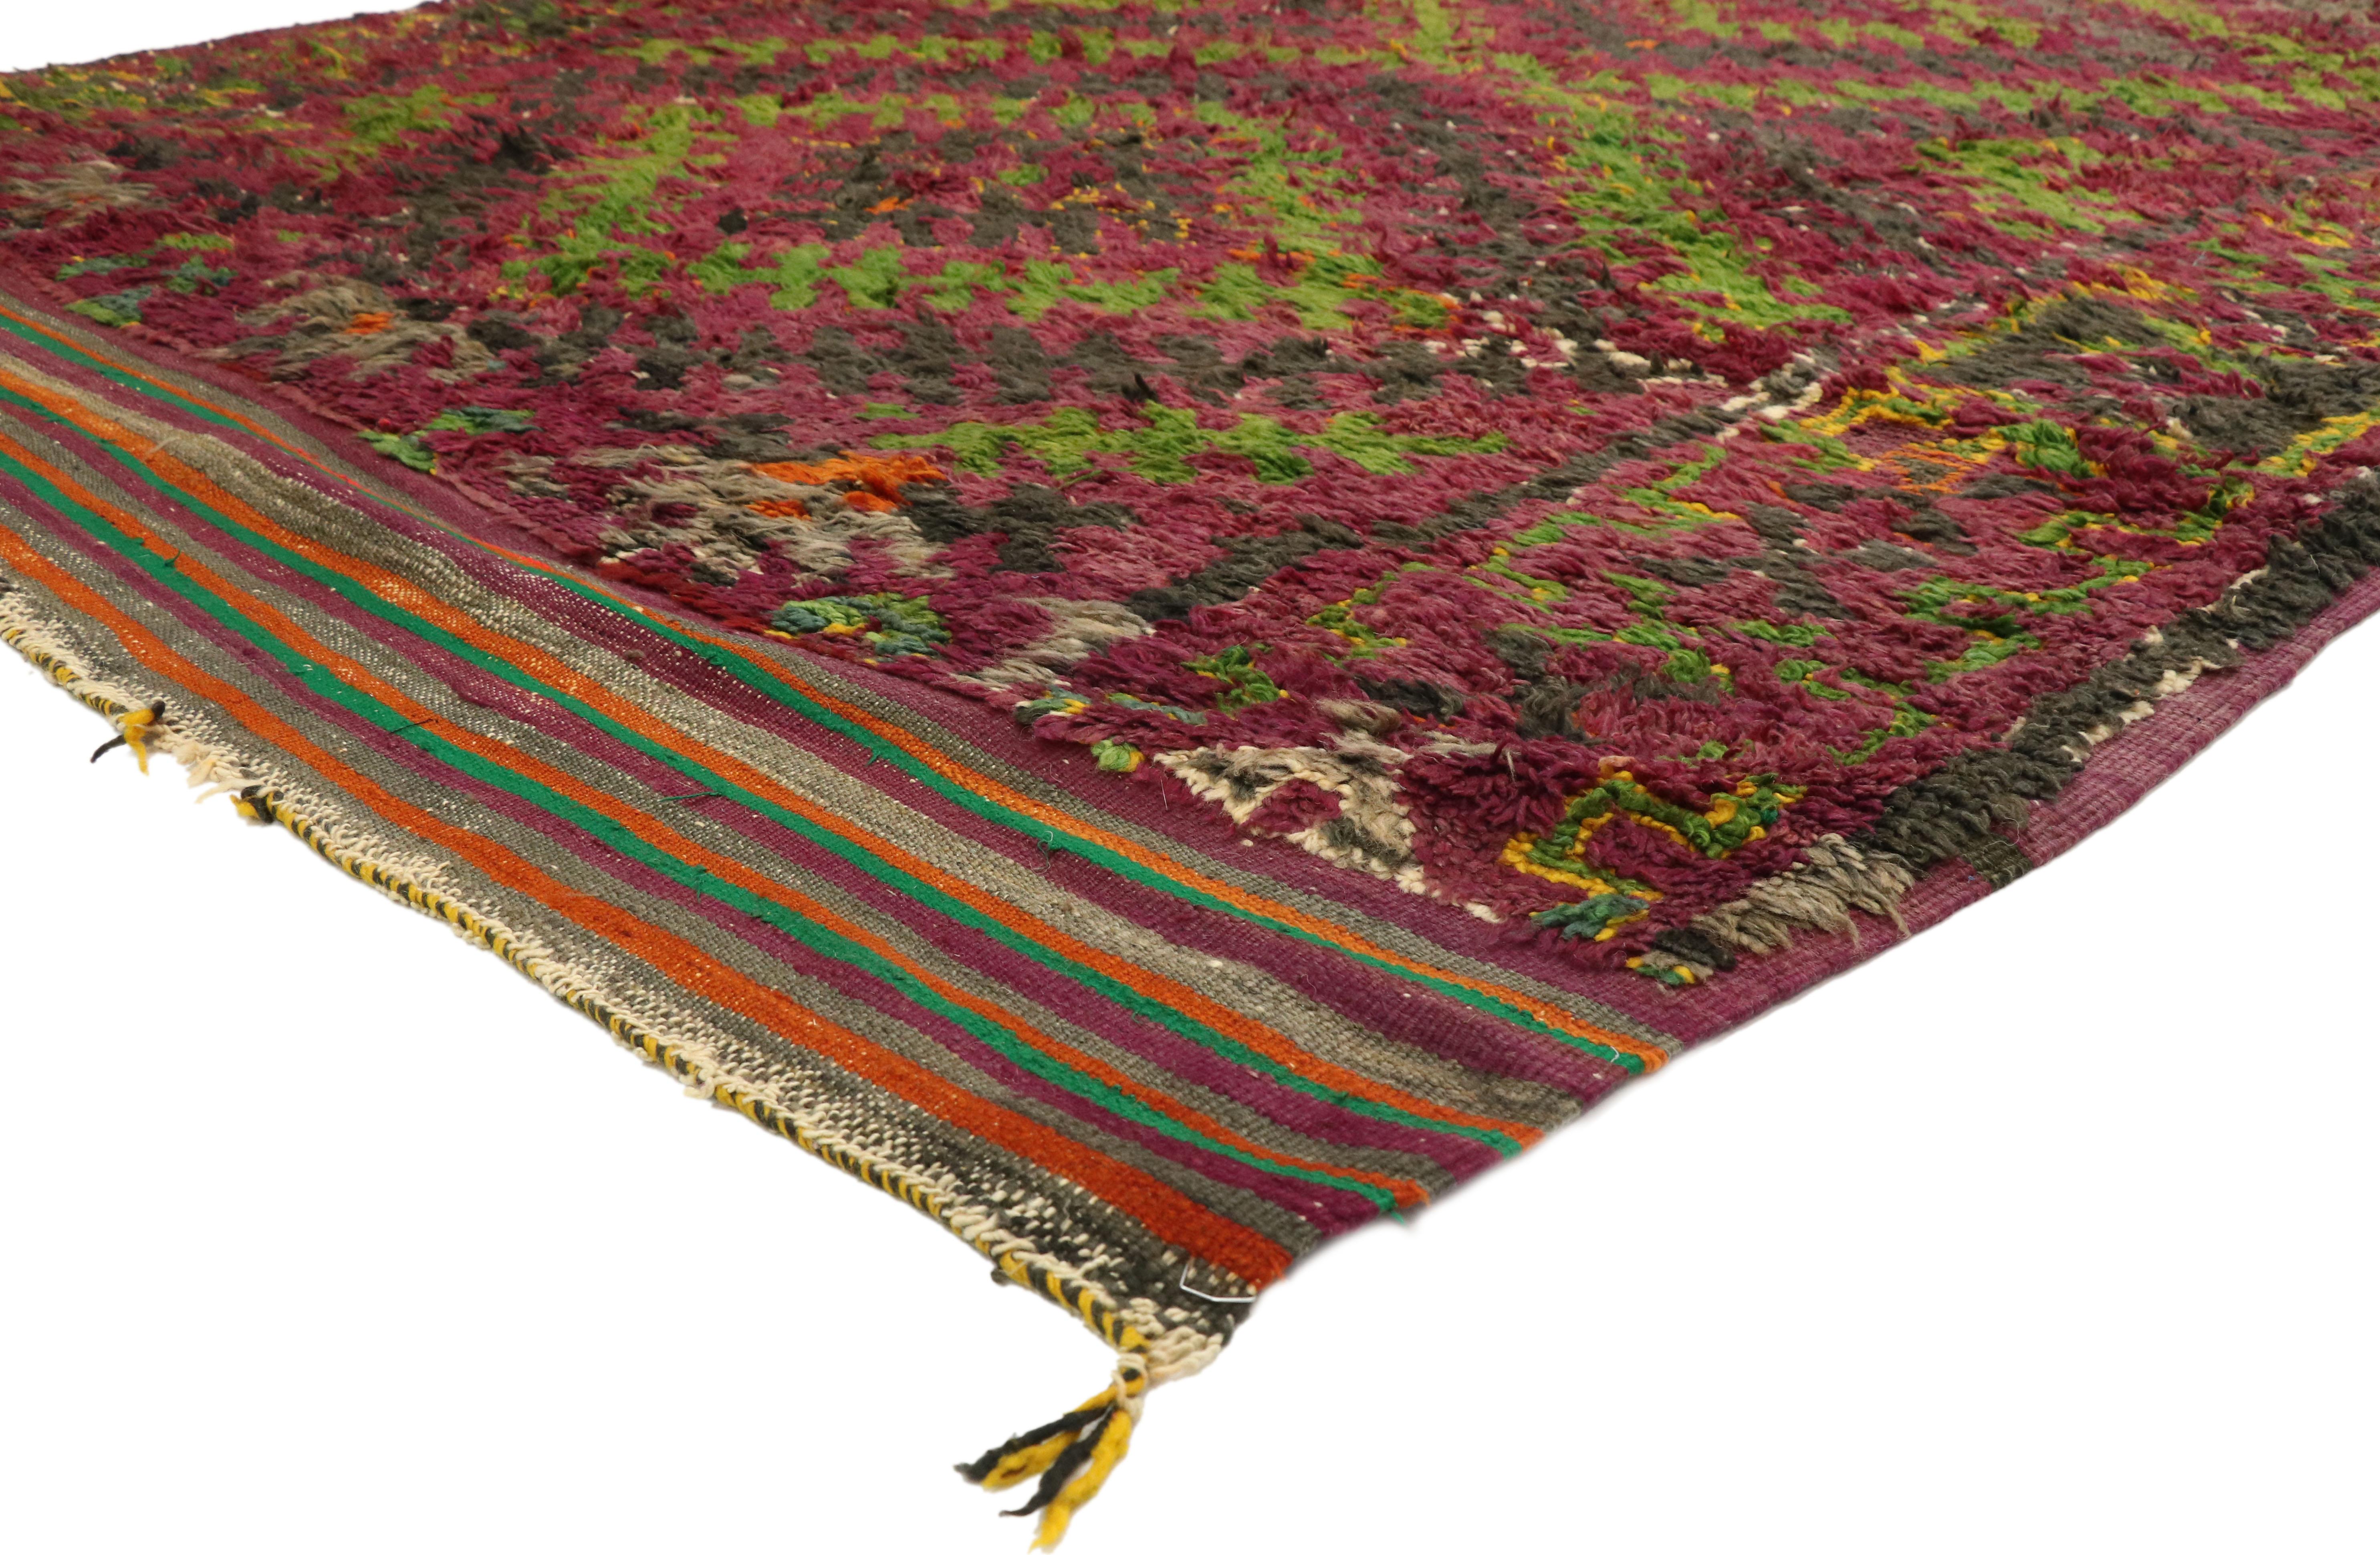 20971, tapis marocain vintage Beni M'Guild de style rétro postmoderne. Ce tapis marocain vintage Beni M'Guild en laine nouée à la main présente une série de diamants expansés composés à partir de l'ancien motif de l'échelle-peigne de la tribu